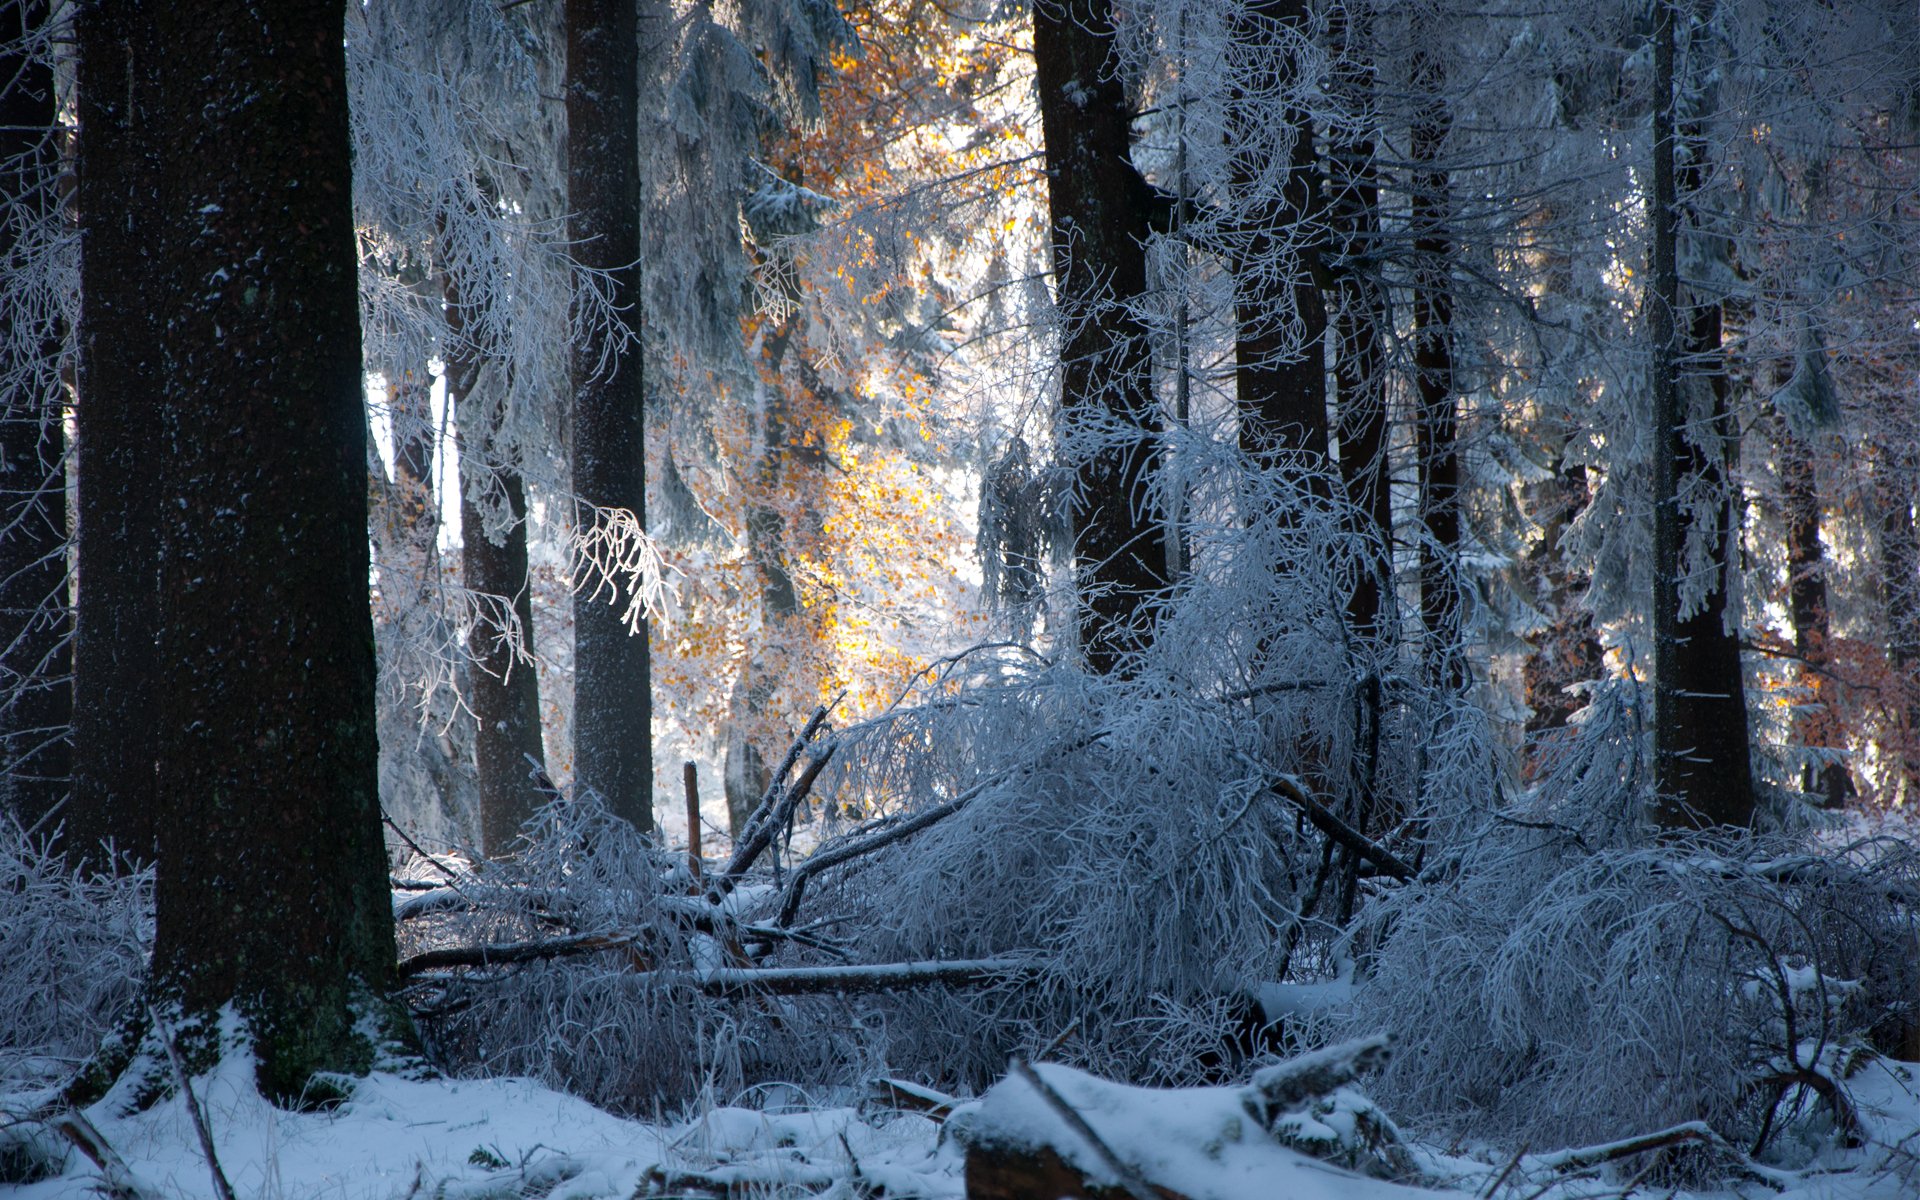 Фф и в морозном лесу я навеки. Зимний лес. Заснеженный лес. Зимой в лесу. Лес в снегу.